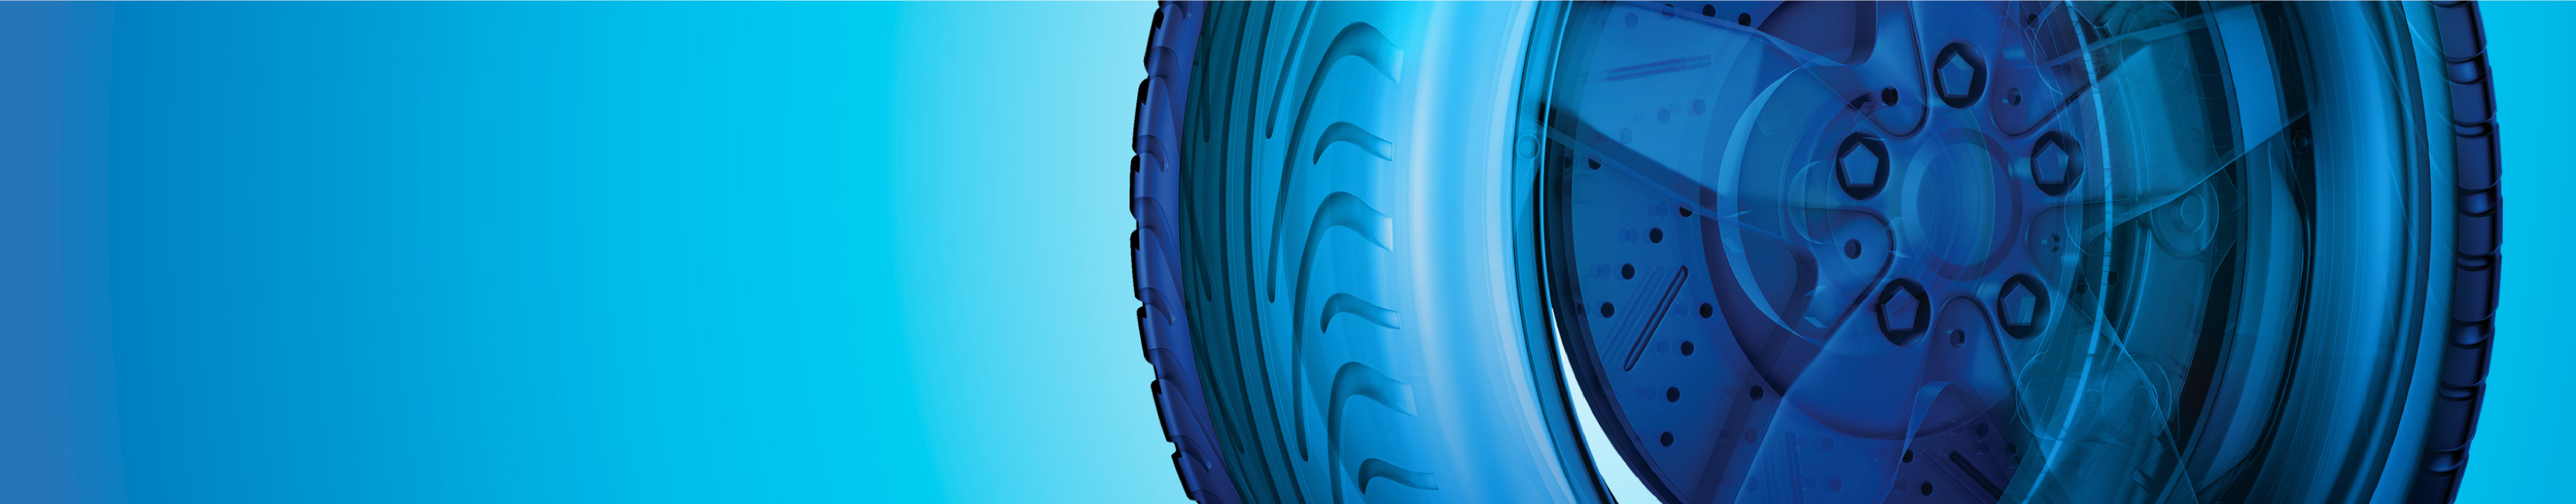 blue tire